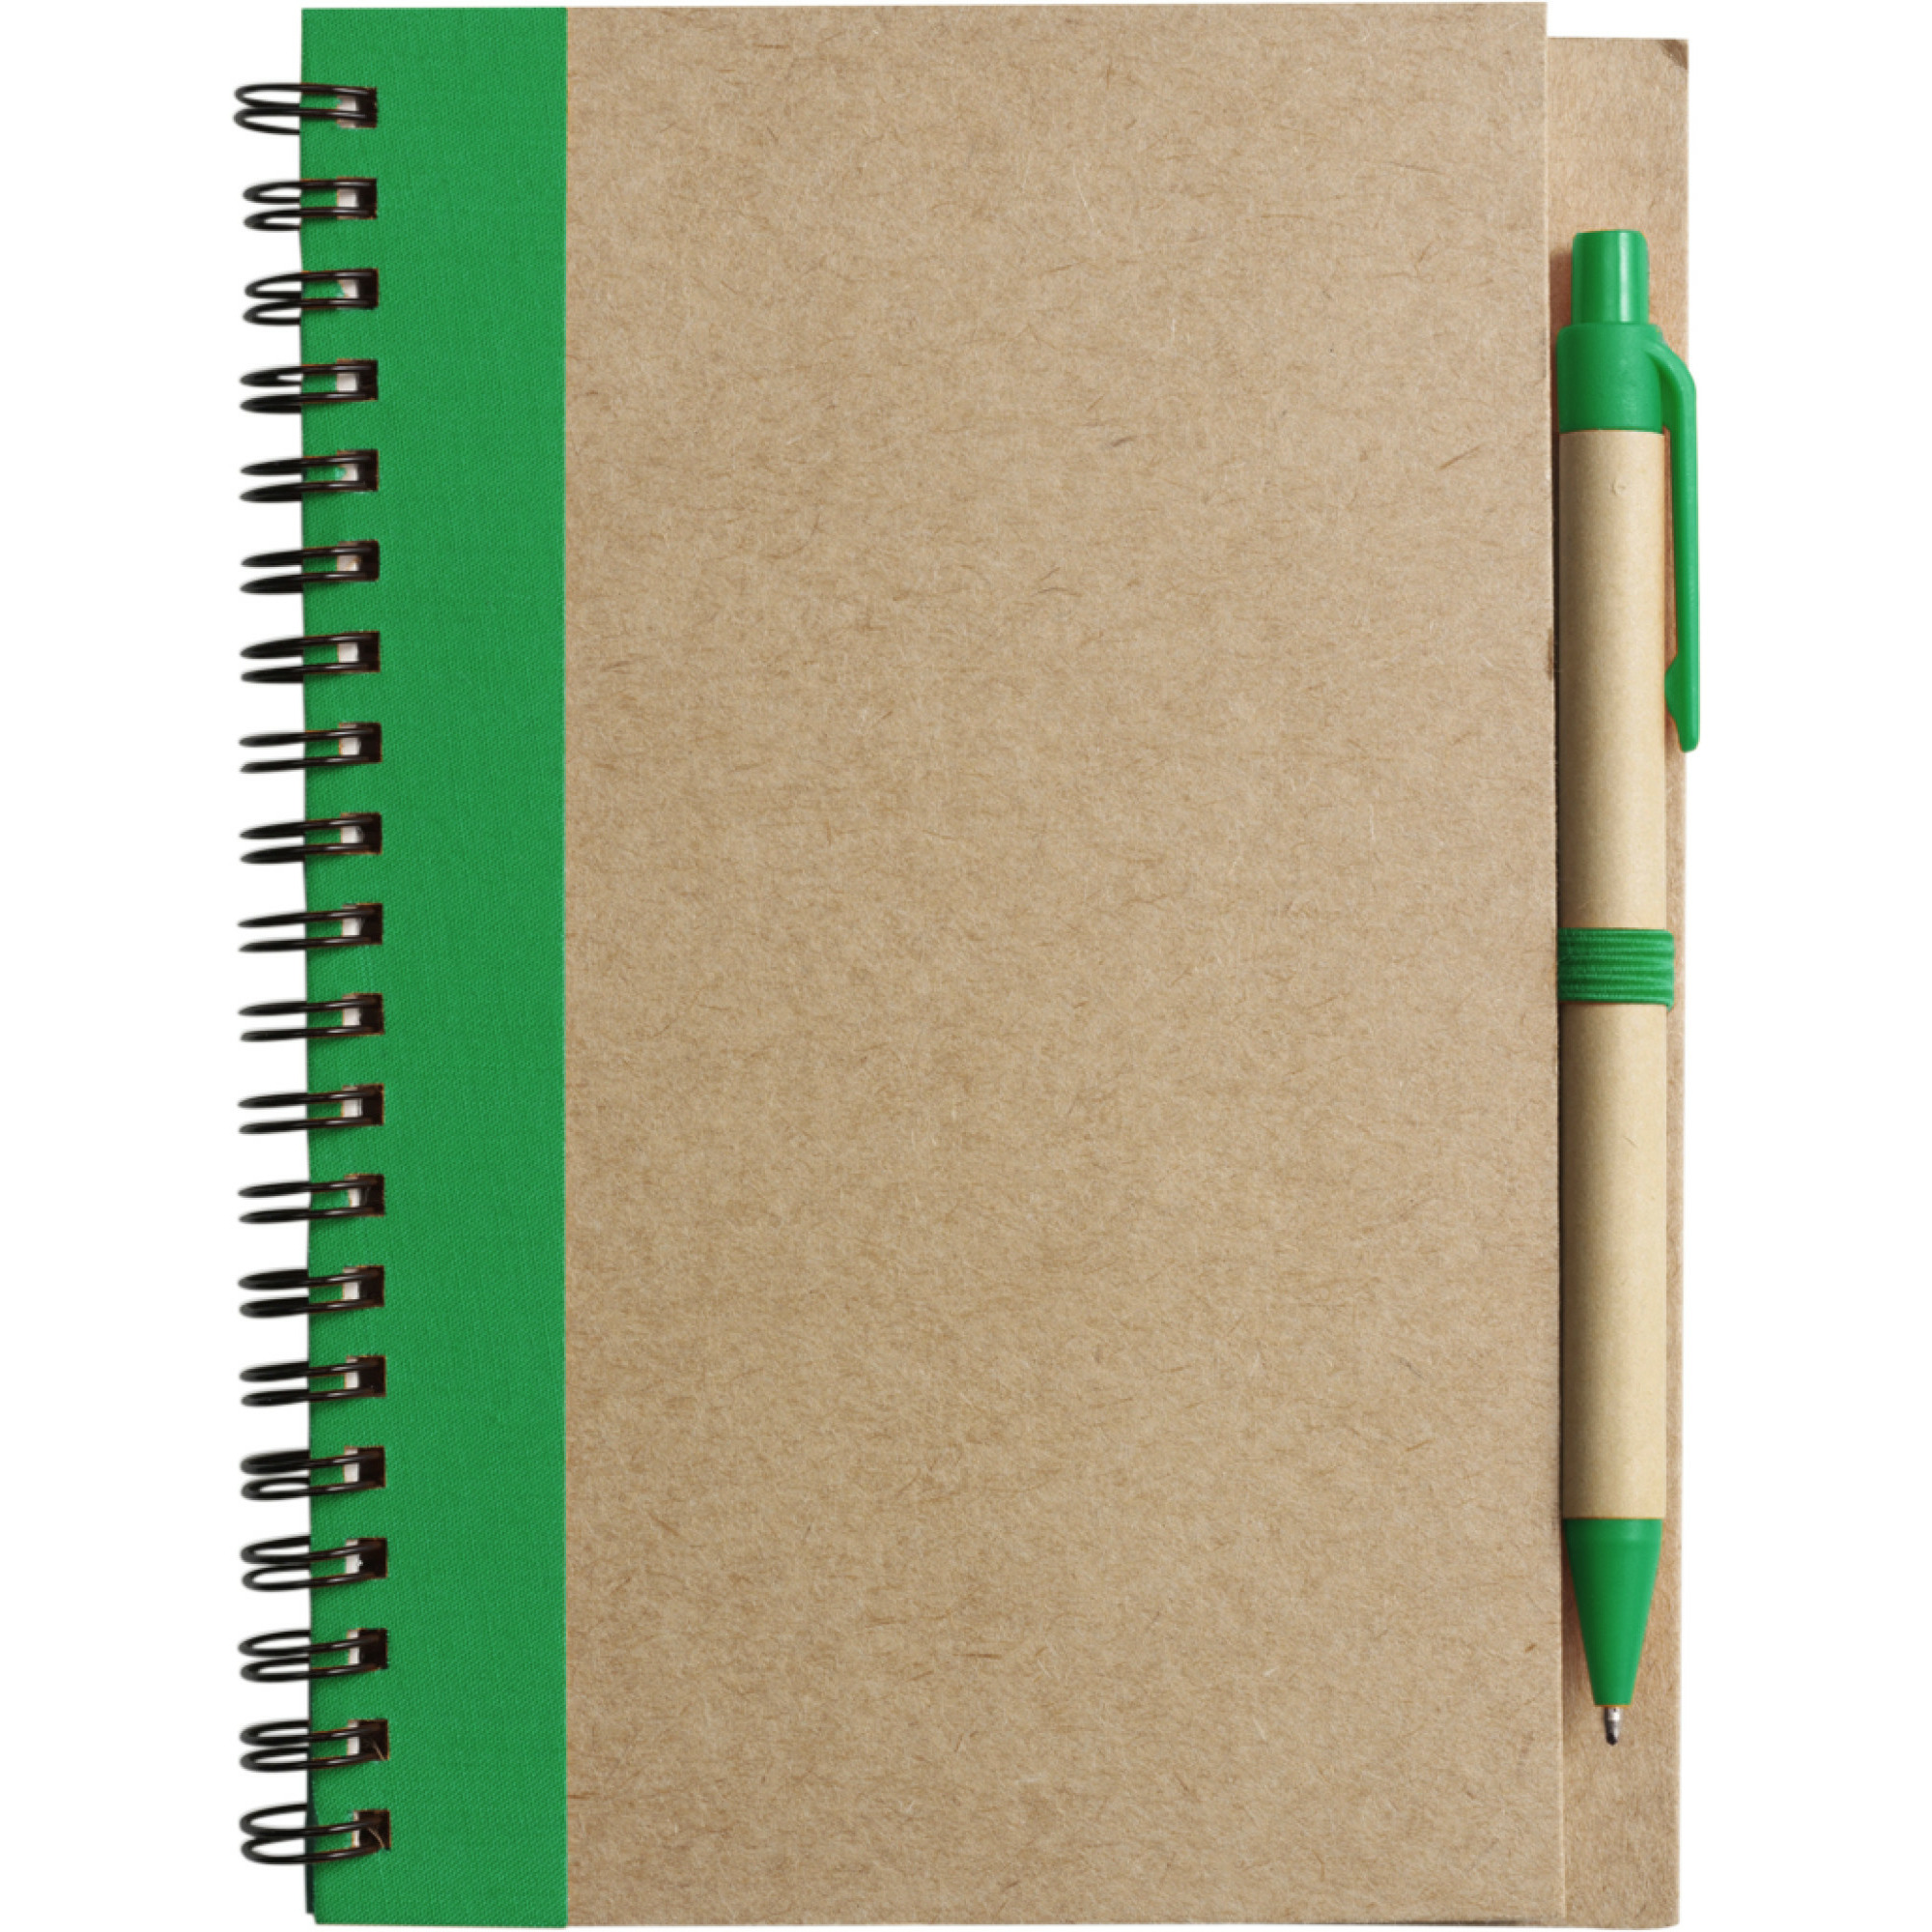 Notitie-opschrijf boekje met balpen harde kaft beige-groen 18x13cm 60blz gelinieerd